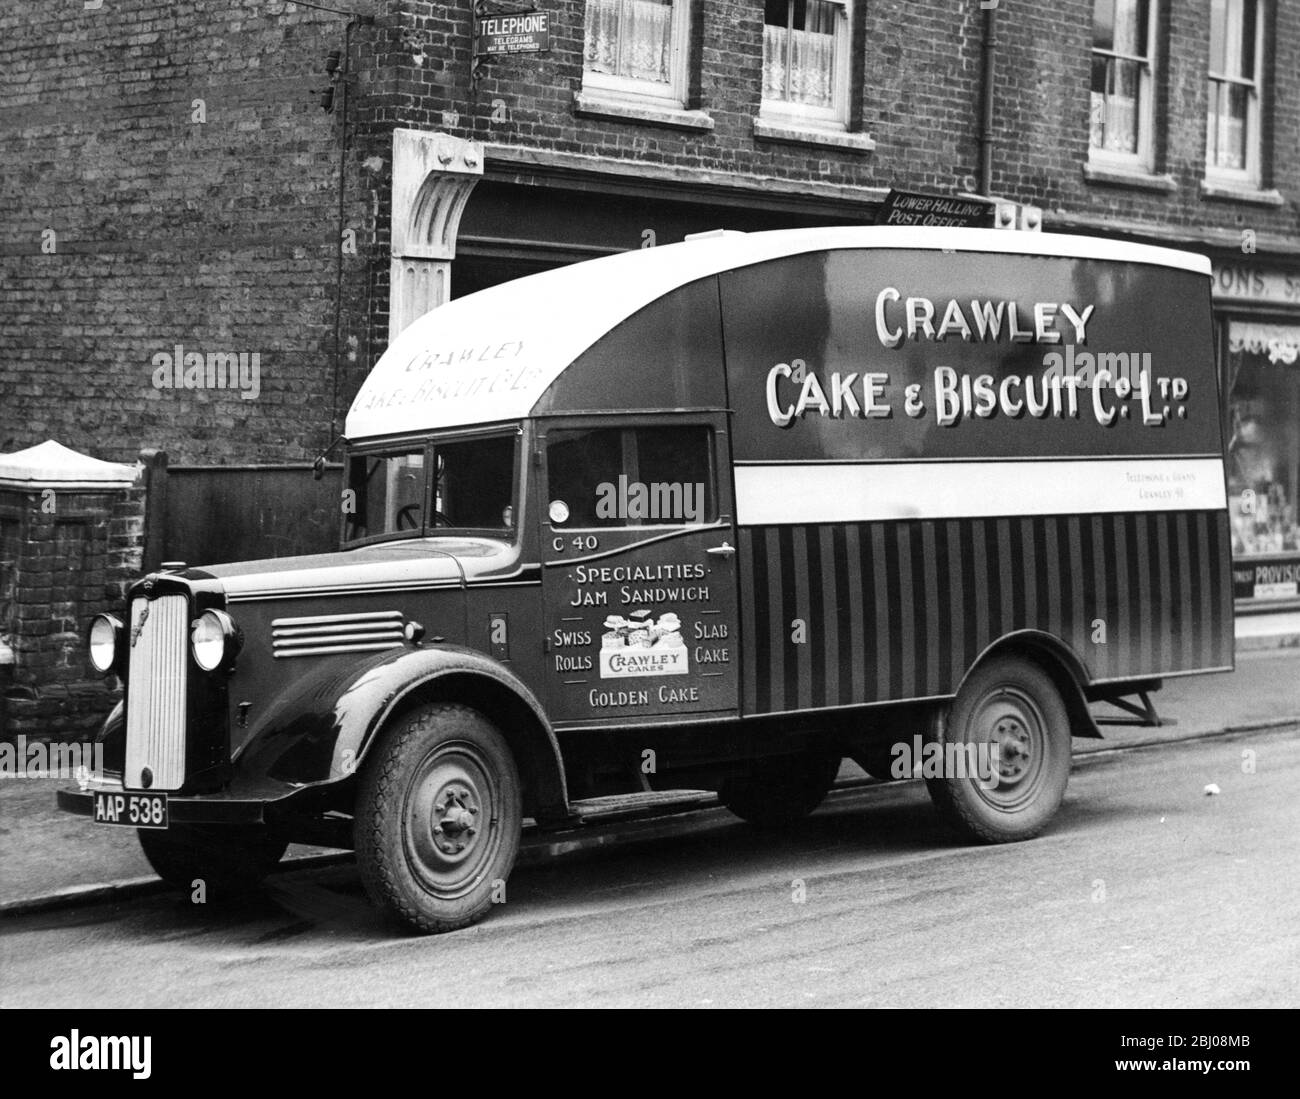 Camionnette de livraison Crawley Cake and Biscuit Co Ltd Banque D'Images